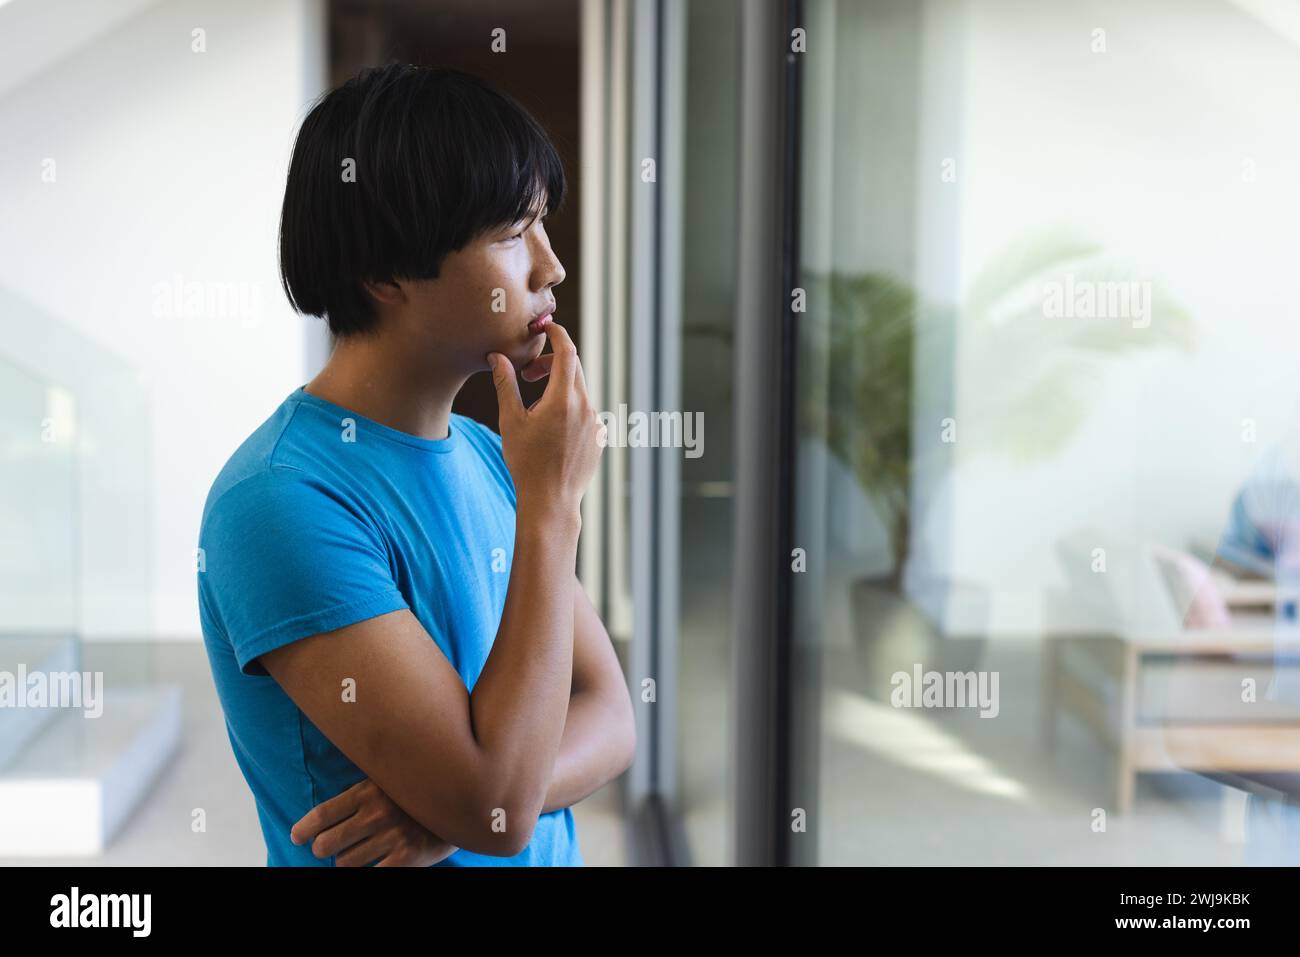 Un garçon asiatique adolescent triste semble réfléchi, avec un espace de copie Banque D'Images